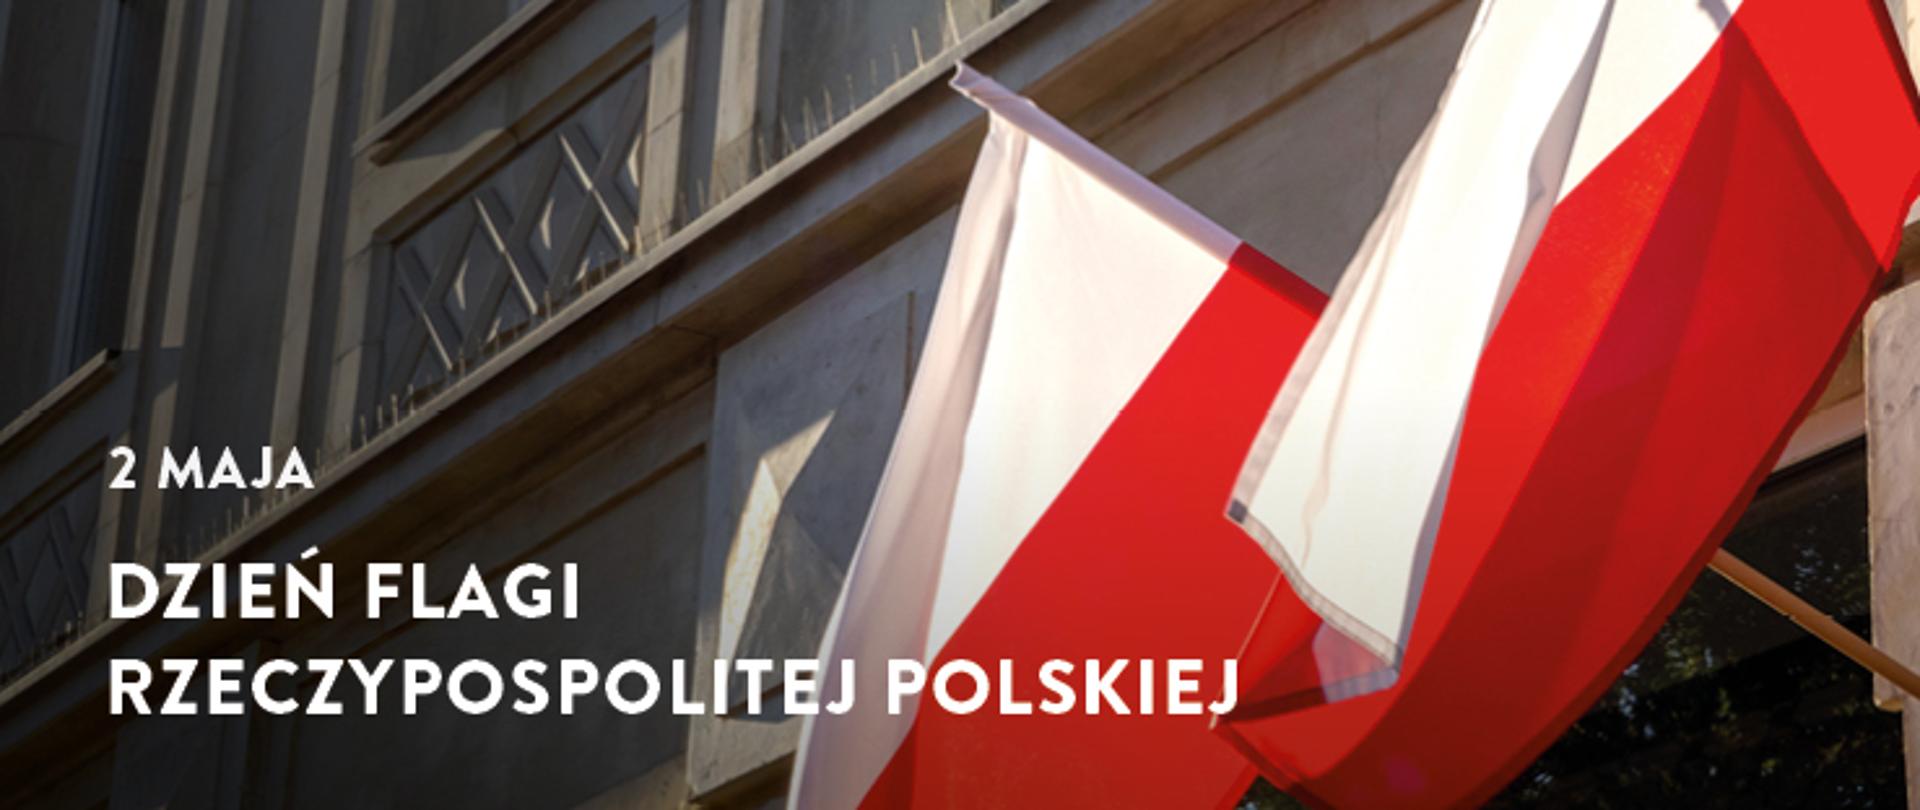 Dzień Flagi Rzeczypospolitej Polskiej oraz Dzień Polonii i Polaków za Granicą